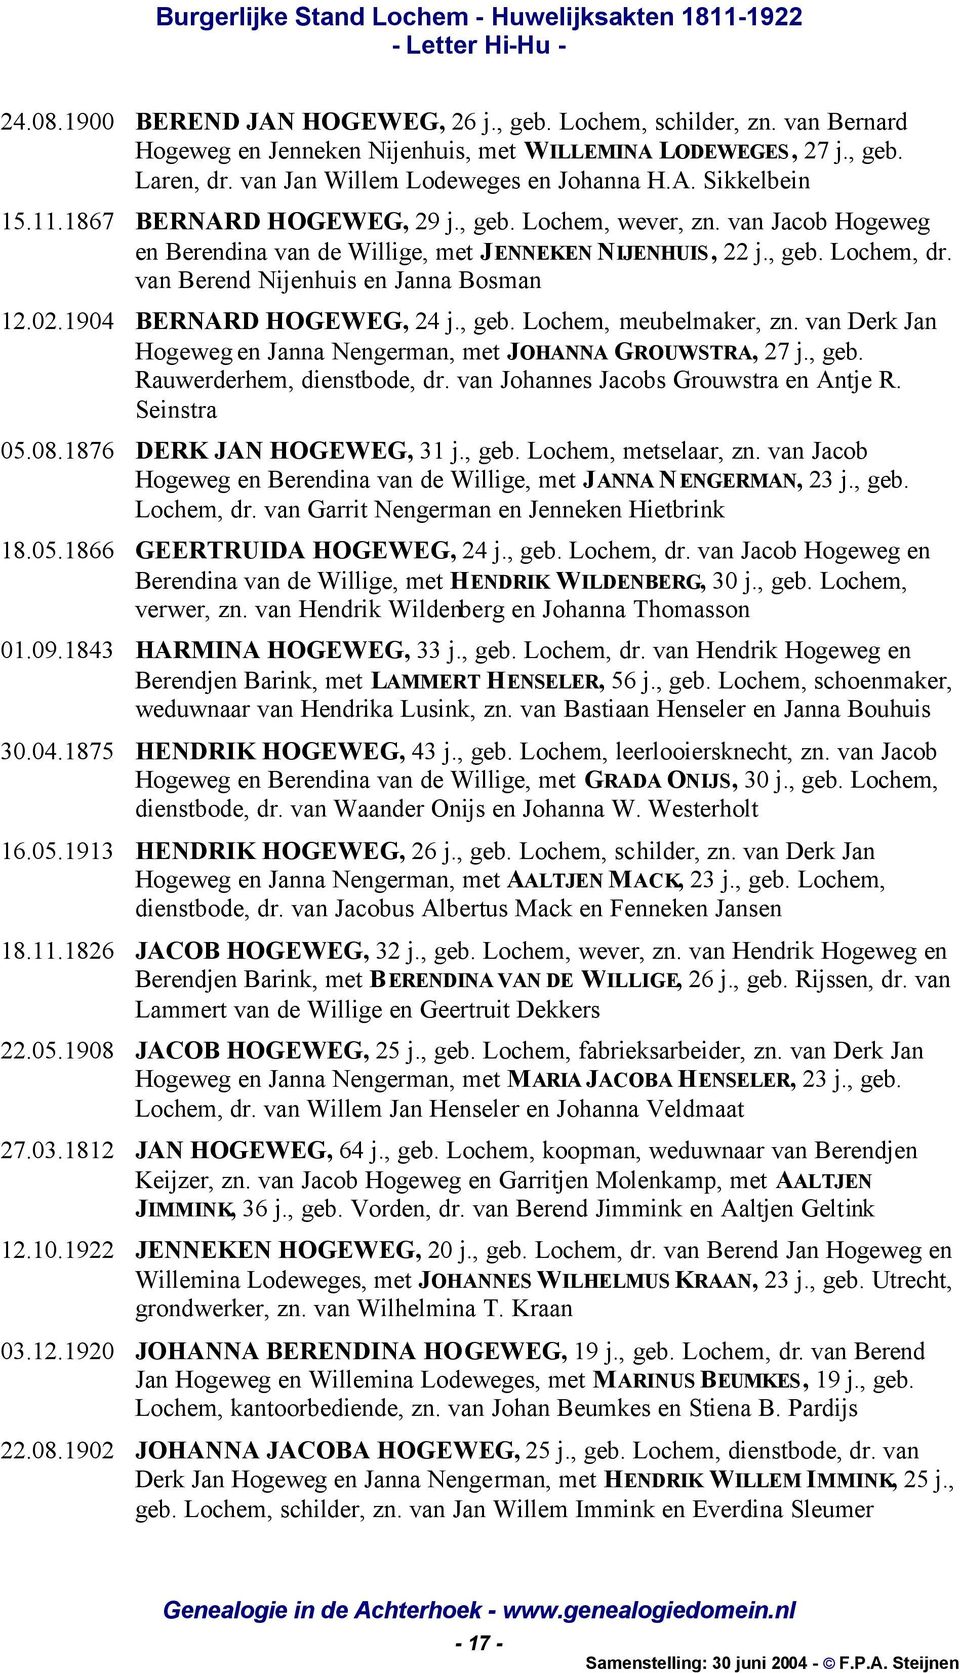 1904 BERNARD HOGEWEG, 24 j., geb. Lochem, meubelmaker, zn. van Derk Jan Hogeweg en Janna Nengerman, met JOHANNA GROUWSTRA, 27 j., geb. Rauwerderhem, dienstbode, dr.